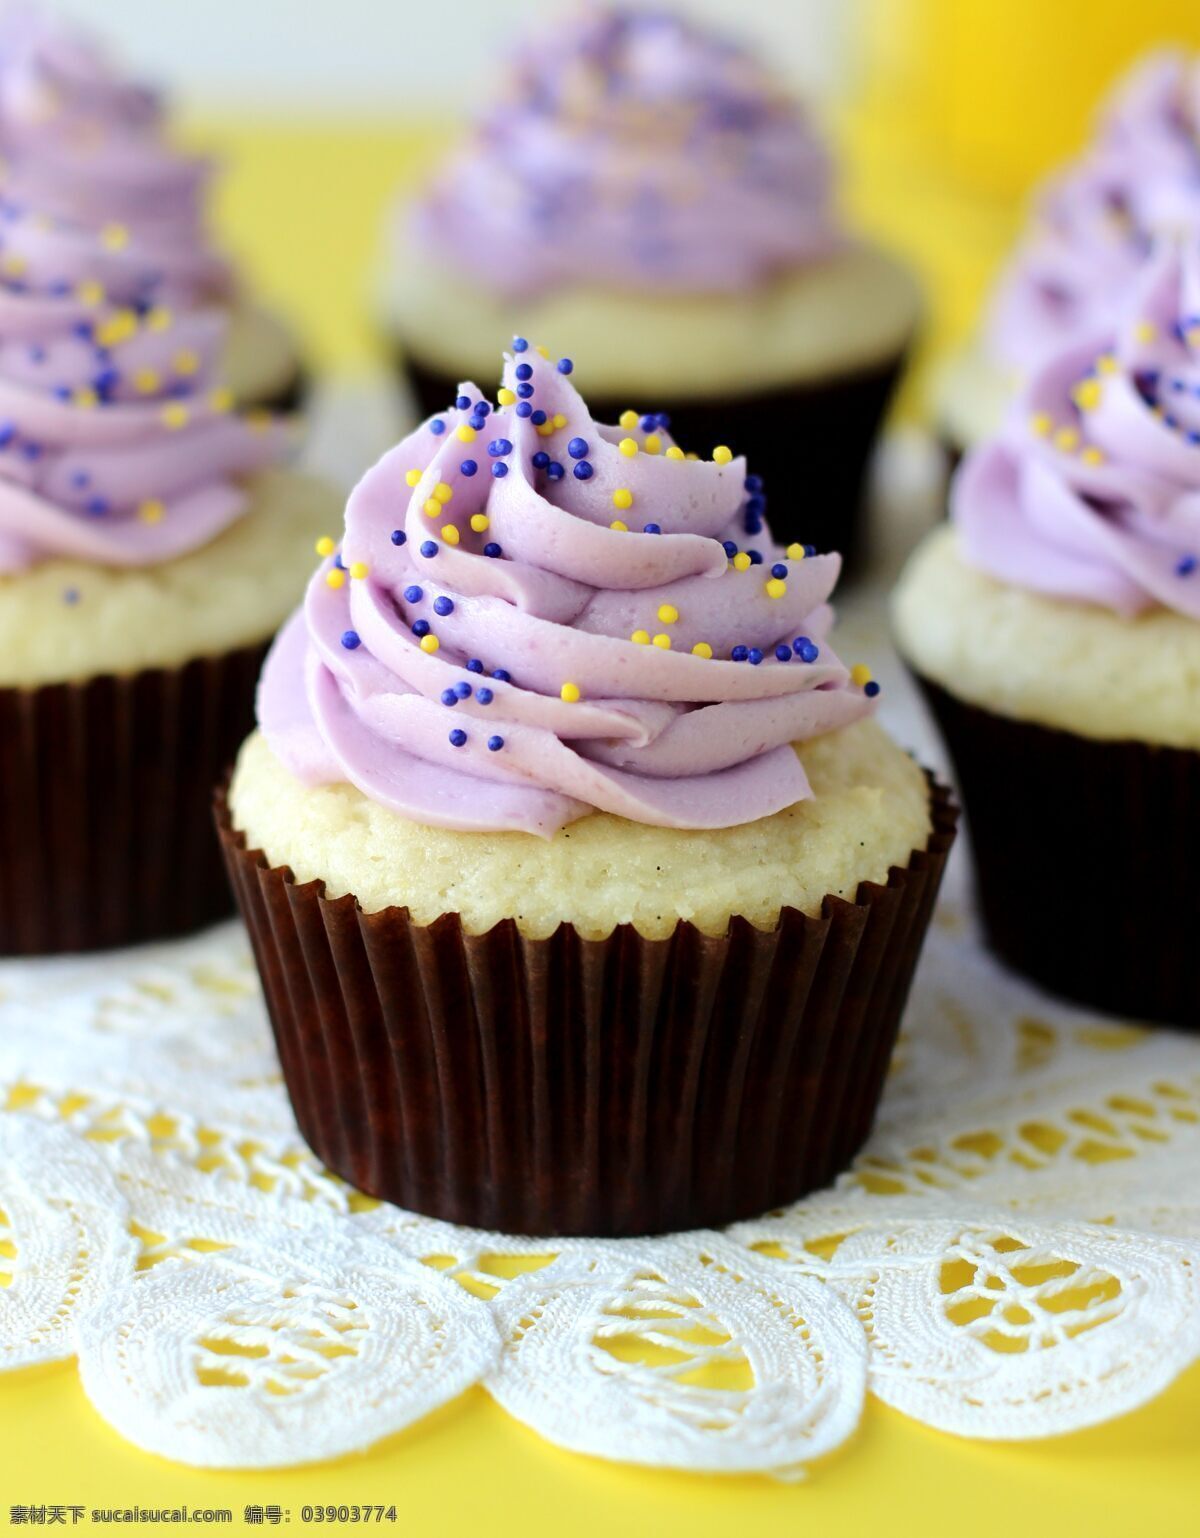 浪漫 紫色 纸杯 蛋糕 纸杯蛋糕 奶油 甜点装饰 聚会 diy 美味 美食 甜点 面食 面点 蛋糕甜点 西餐美食 餐饮美食